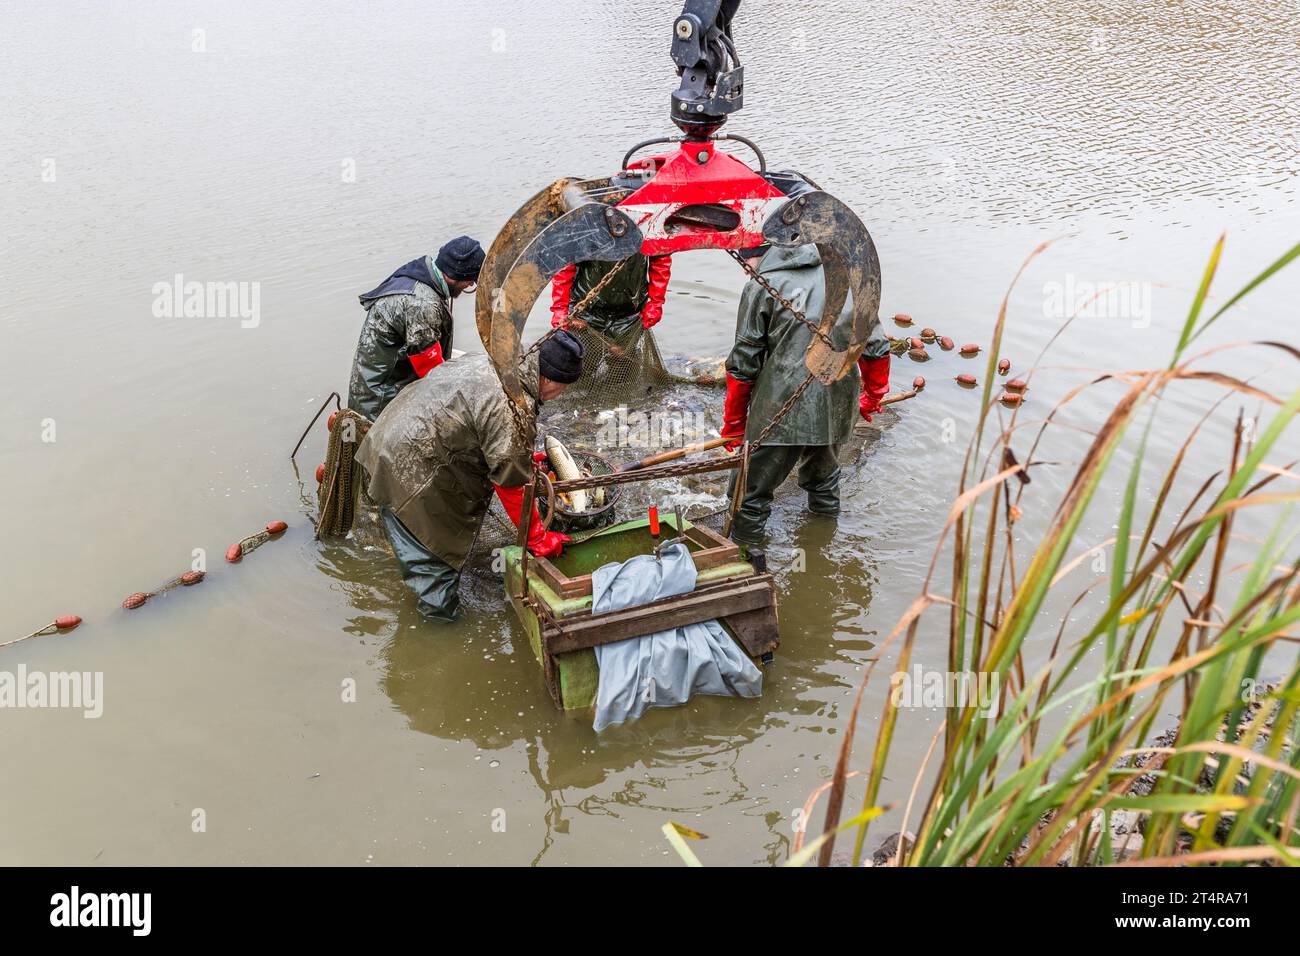 Oggigiorno, la pesca delle carpe viene praticata anche con le macchine. Qui c'è una gru che solleva il cibo e il pesce dall'acqua. Mitterteich (VGem), Germania Foto Stock